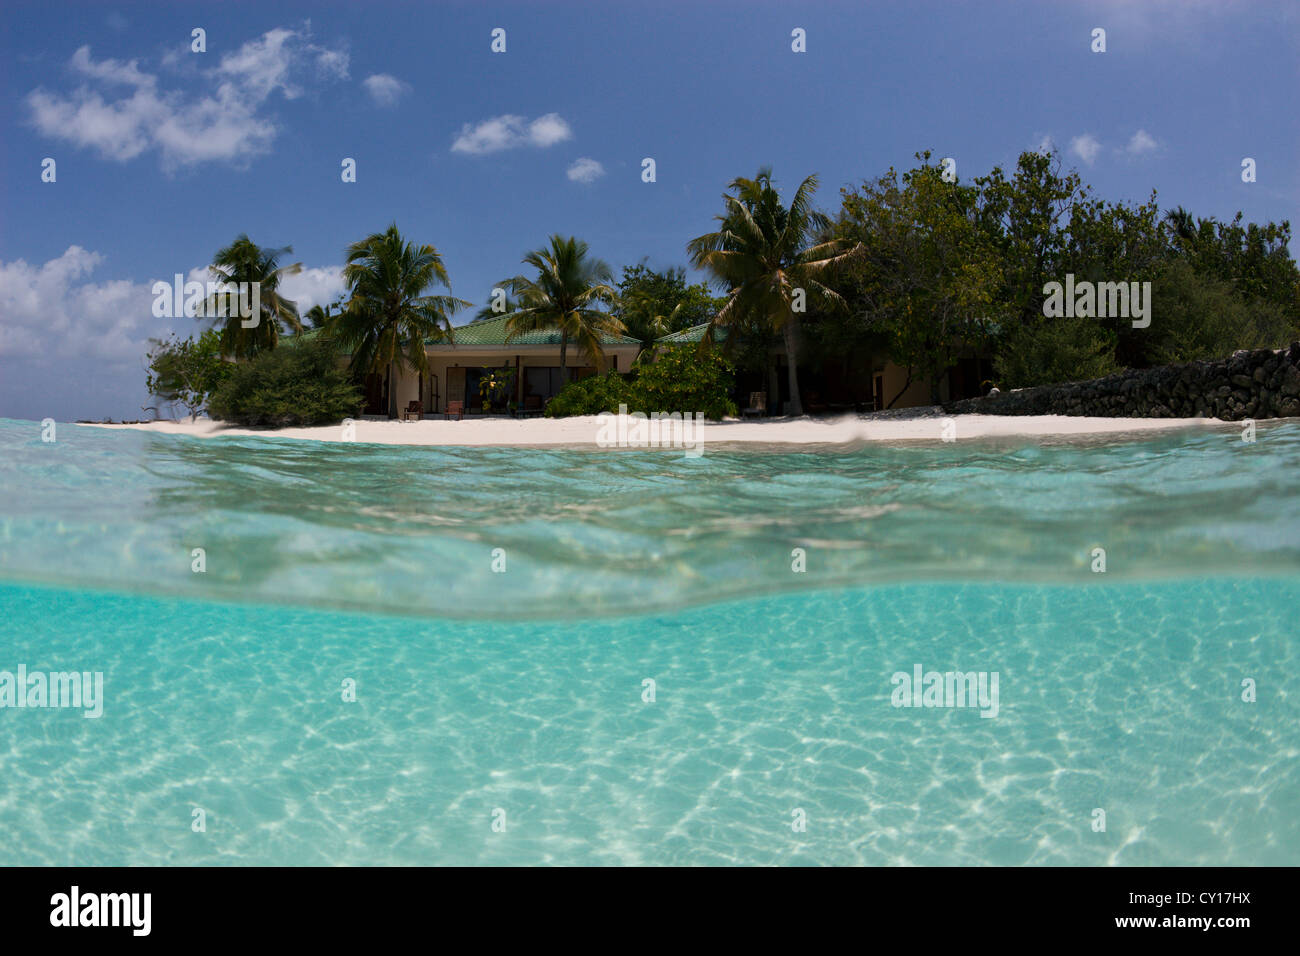 lagoon of Eriyado Island, North Male Atoll, Maldives Stock Photo